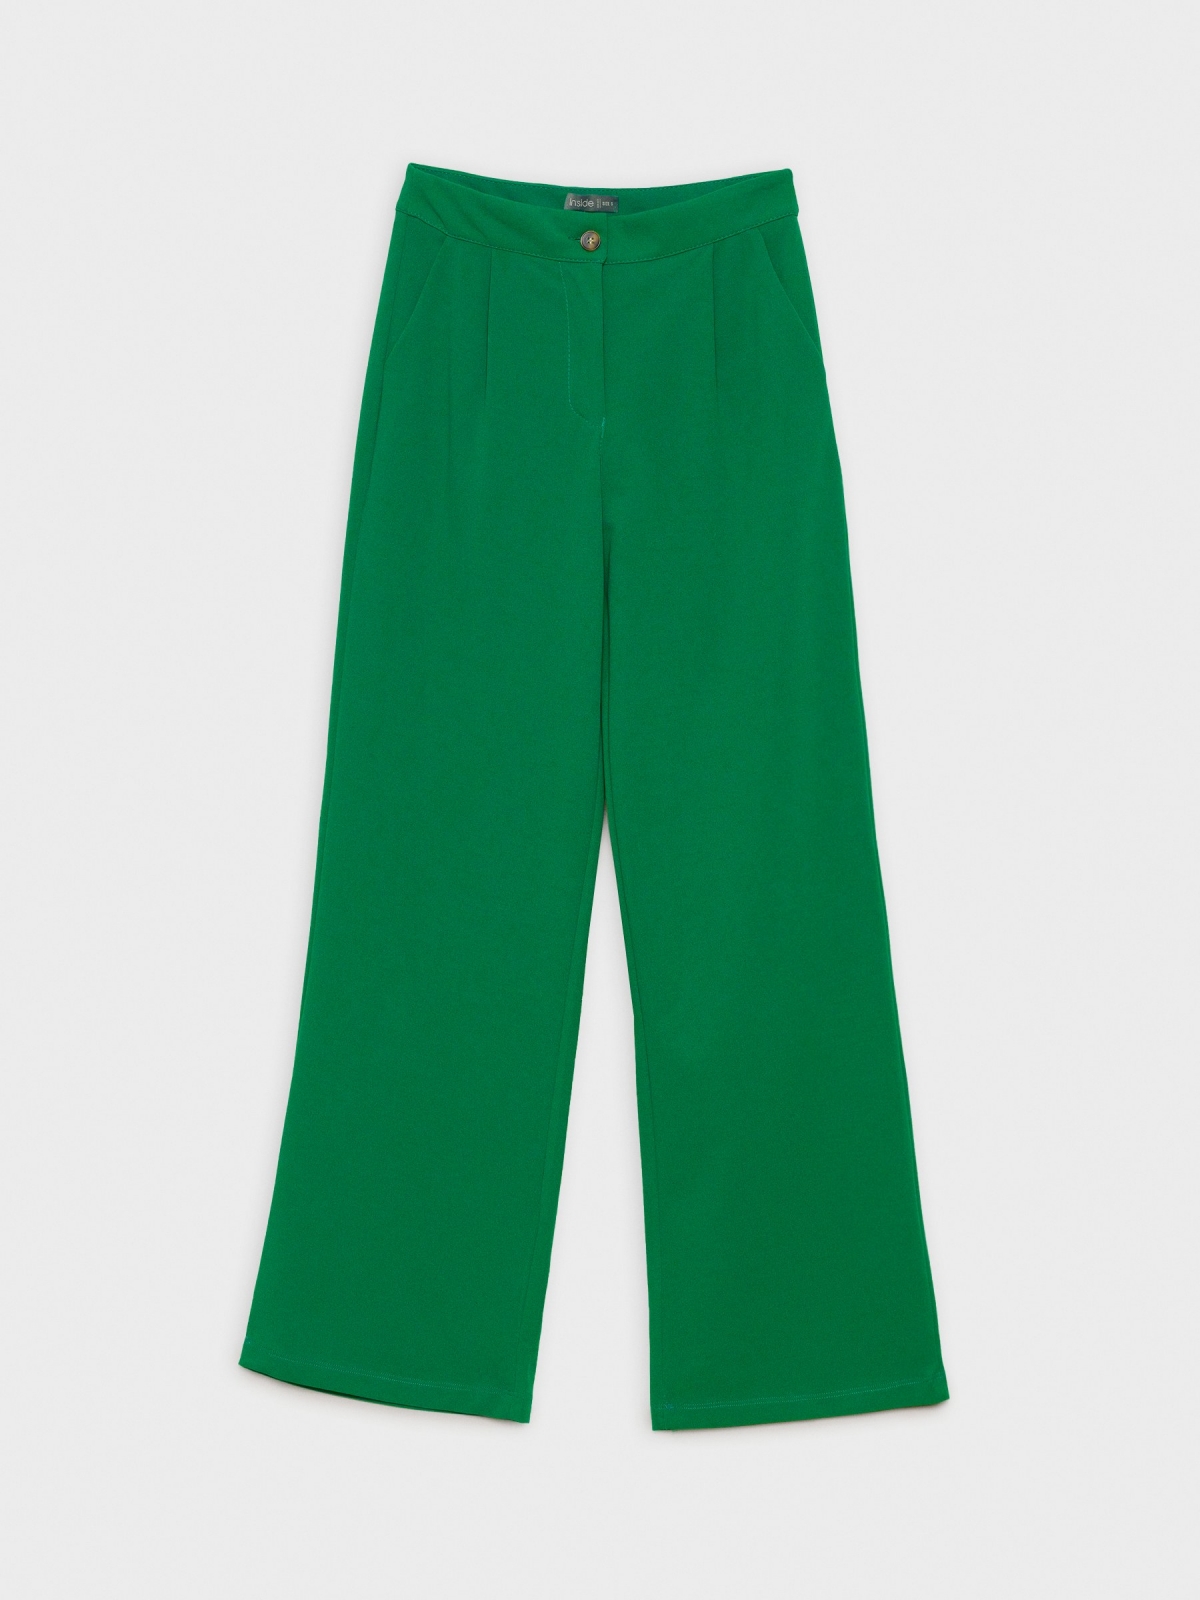  Pantalón básico wide leg verde